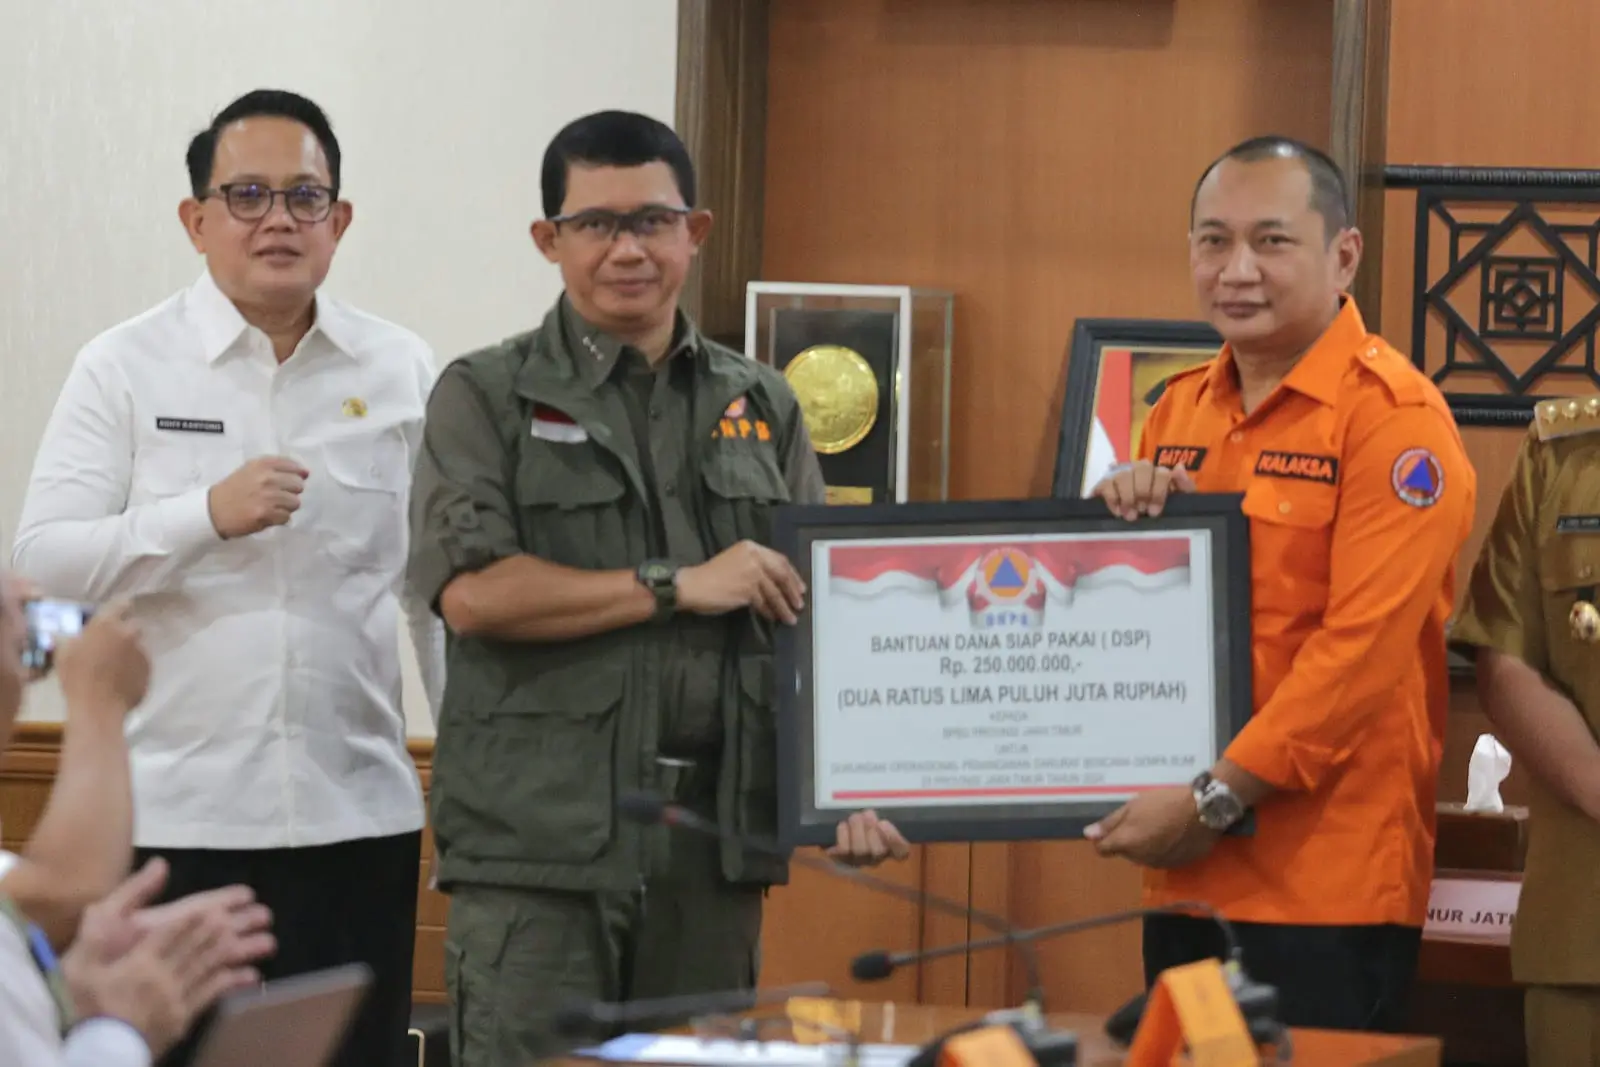 Kepala BNPB Letjen TNI Suharyanto, S.Sos., M.M (kemeja dan rompi hijau) saat memberikan simbolis dukungan bantuan penanganan darurat kepada pemerintah daerah, pada Rapat Koordinasi Penanganan Darurat Gempa di Kantor Bupati Gresik, Jawa Timur pada Senin (25/3).